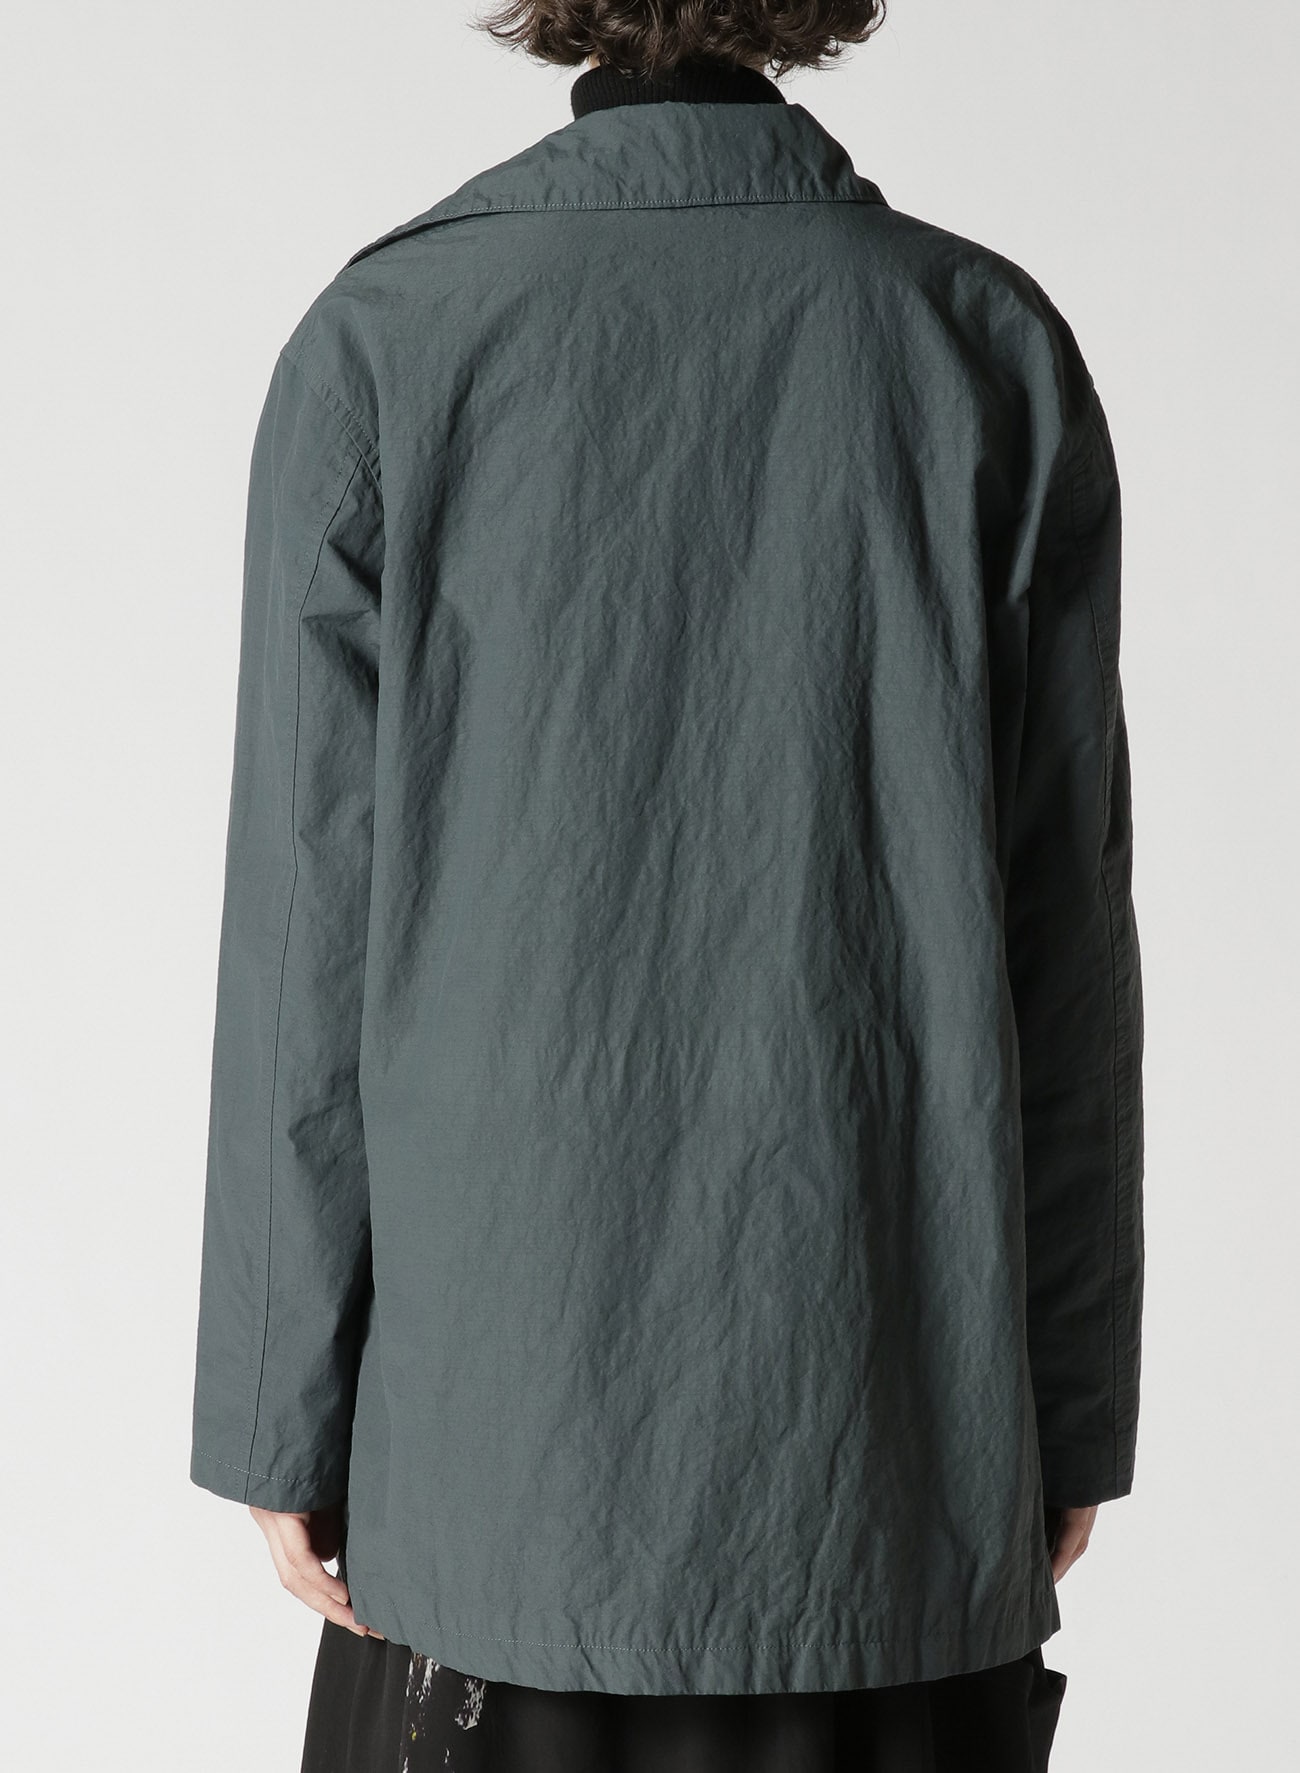 超熱 【YOKE】Detachable Collar Jacket テーラードジャケット - www